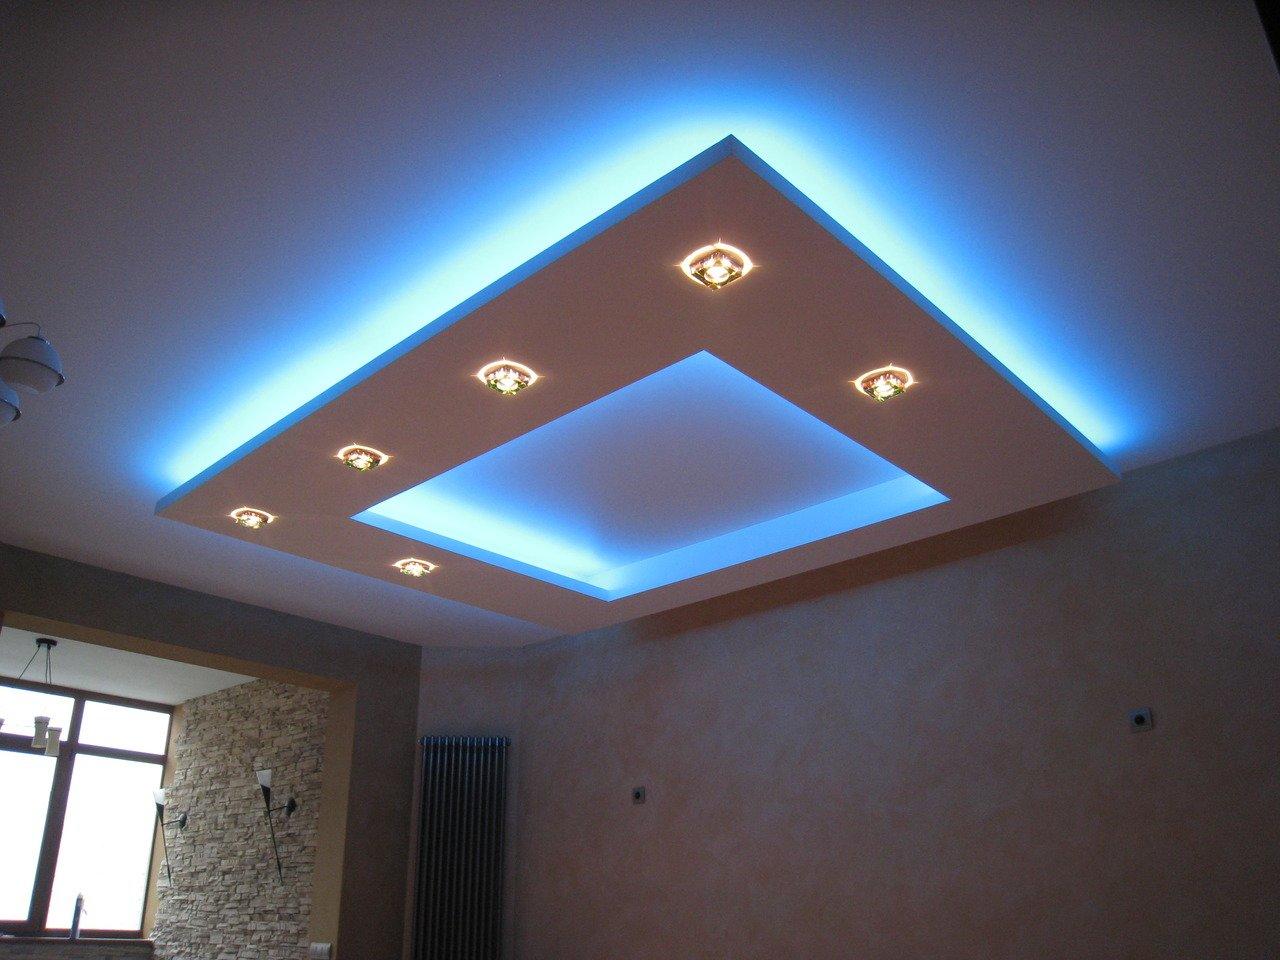 Tavanul întins cu iluminare neon este durabil, deoarece lămpile sunt înlocuite o dată la 10 ani